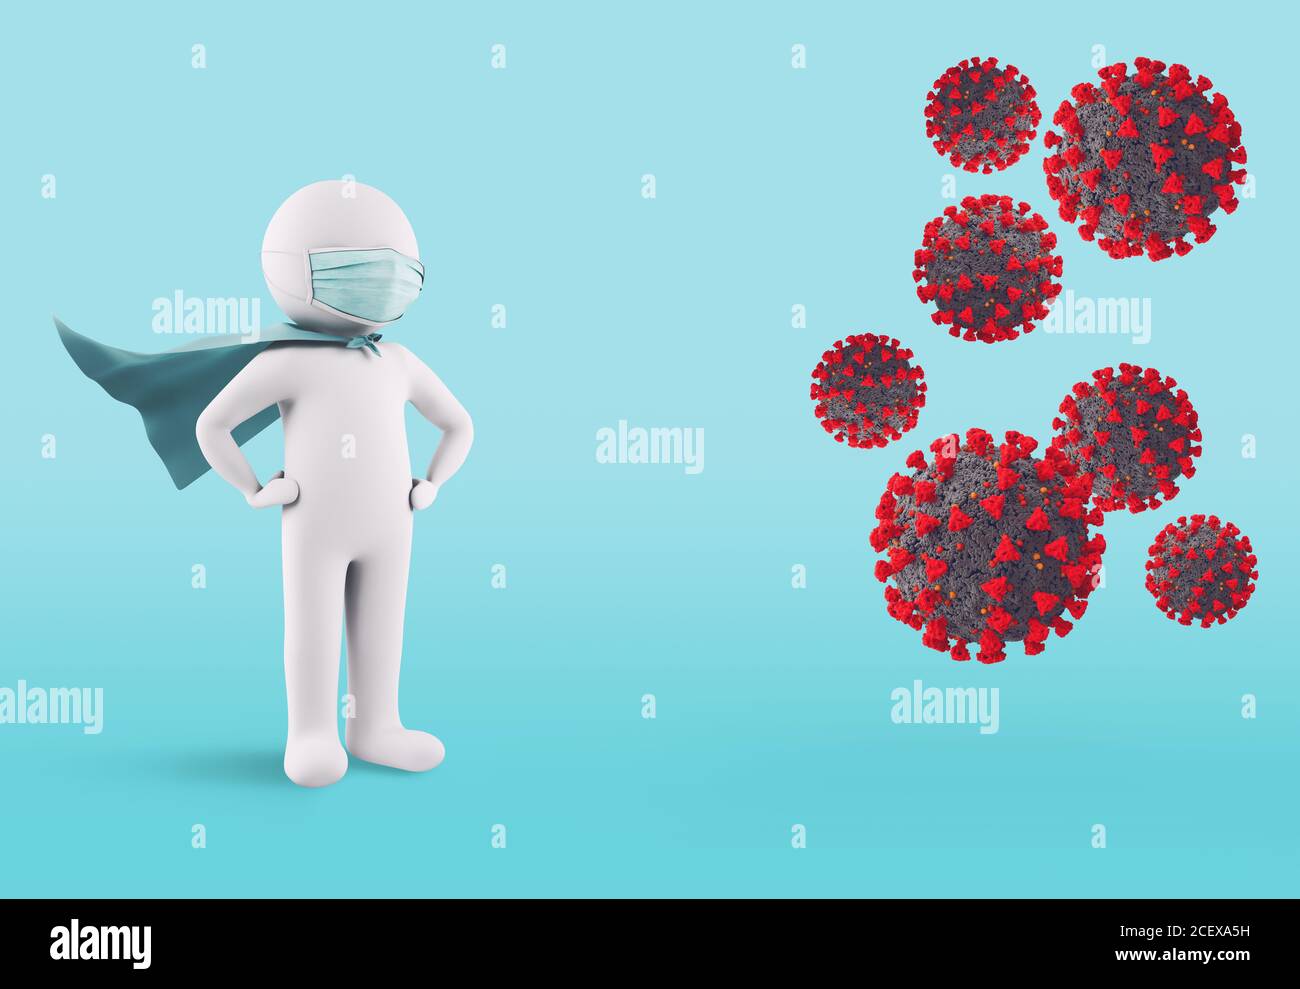 Konzept der Verteidigung gegen Virusinfektion mit Gesichtsmaske. 3D-Rendering Stockfoto